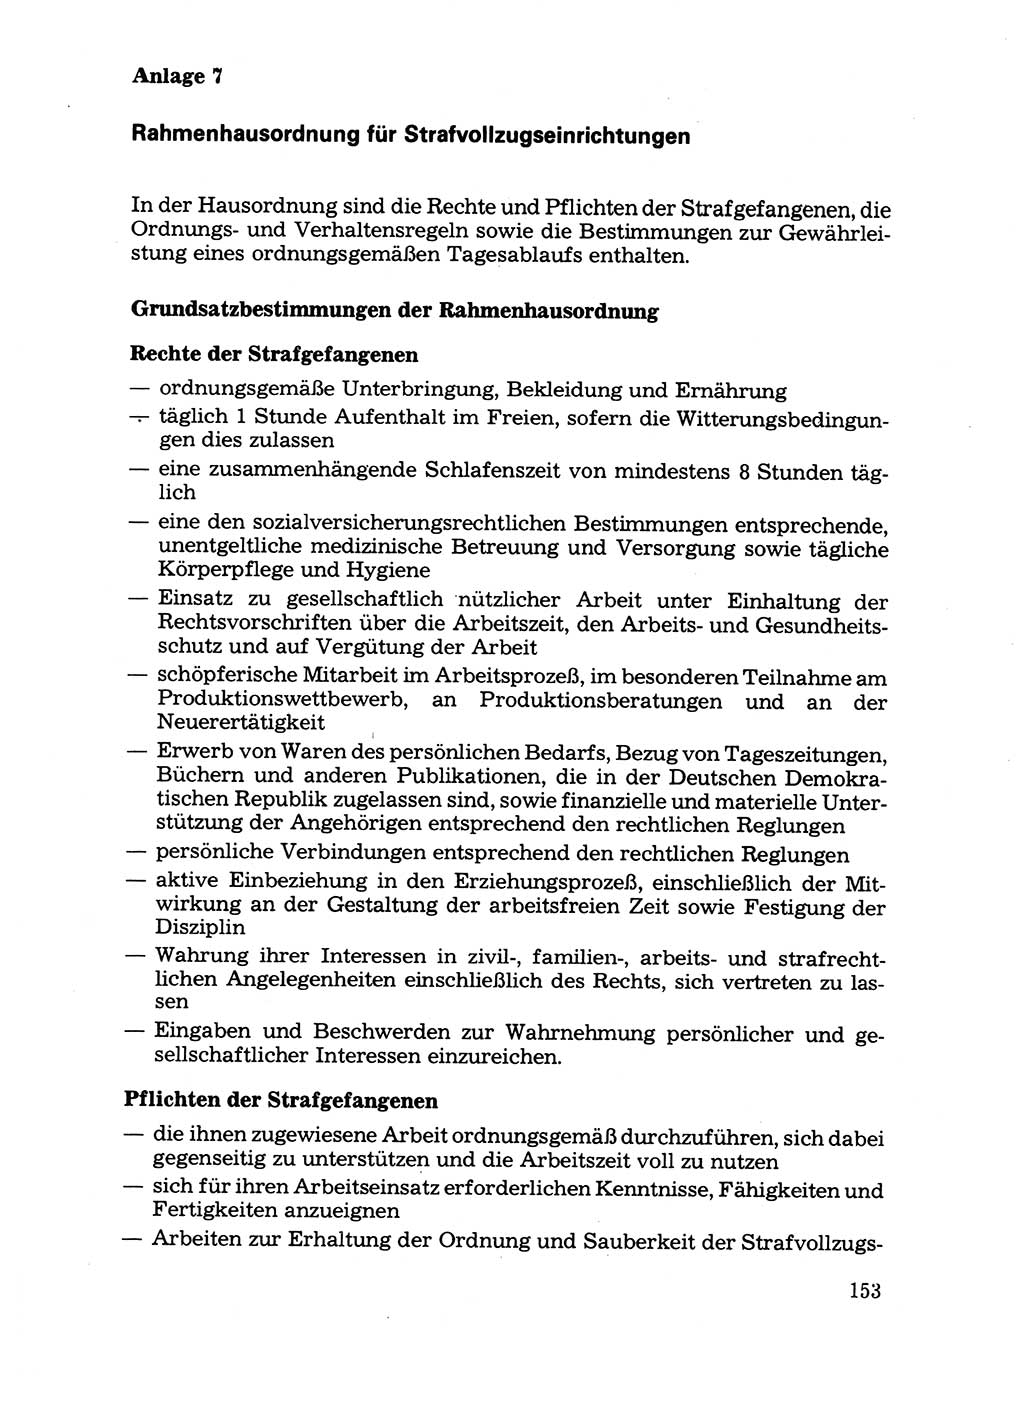 Handbuch für operative Dienste, Abteilung Strafvollzug (SV) [Ministerium des Innern (MdI) Deutsche Demokratische Republik (DDR)] 1981, Seite 153 (Hb. op. D. Abt. SV MdI DDR 1981, S. 153)